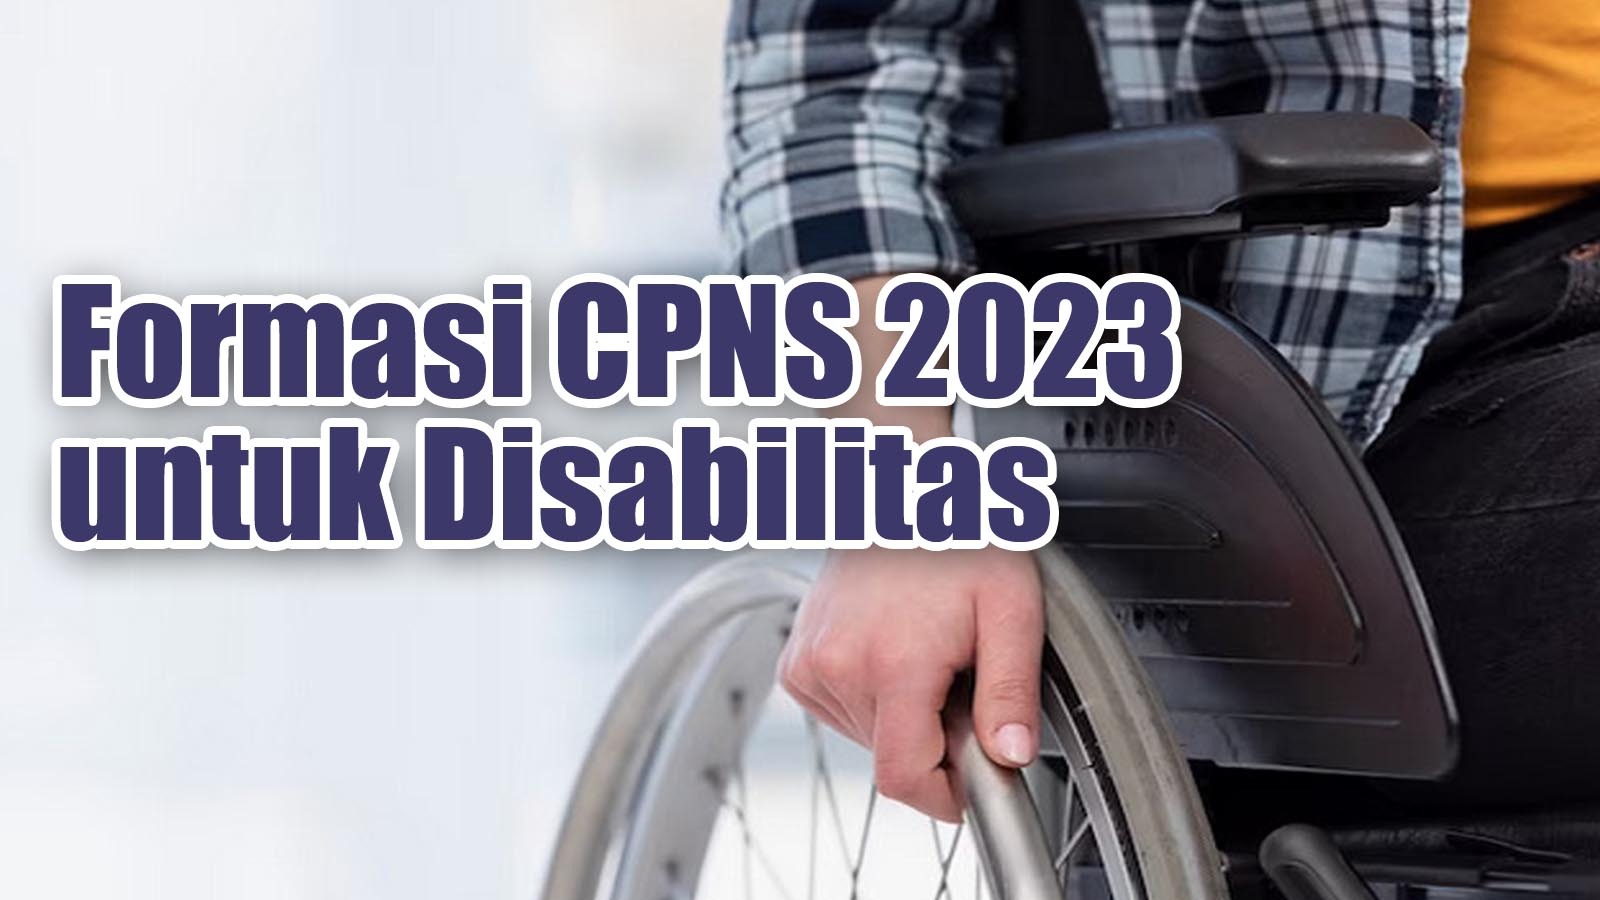 Kriteria Jabatan Formasi CPNS 2023 untuk Disabilitas, Berikut Cara Buat Surat Keterangannya